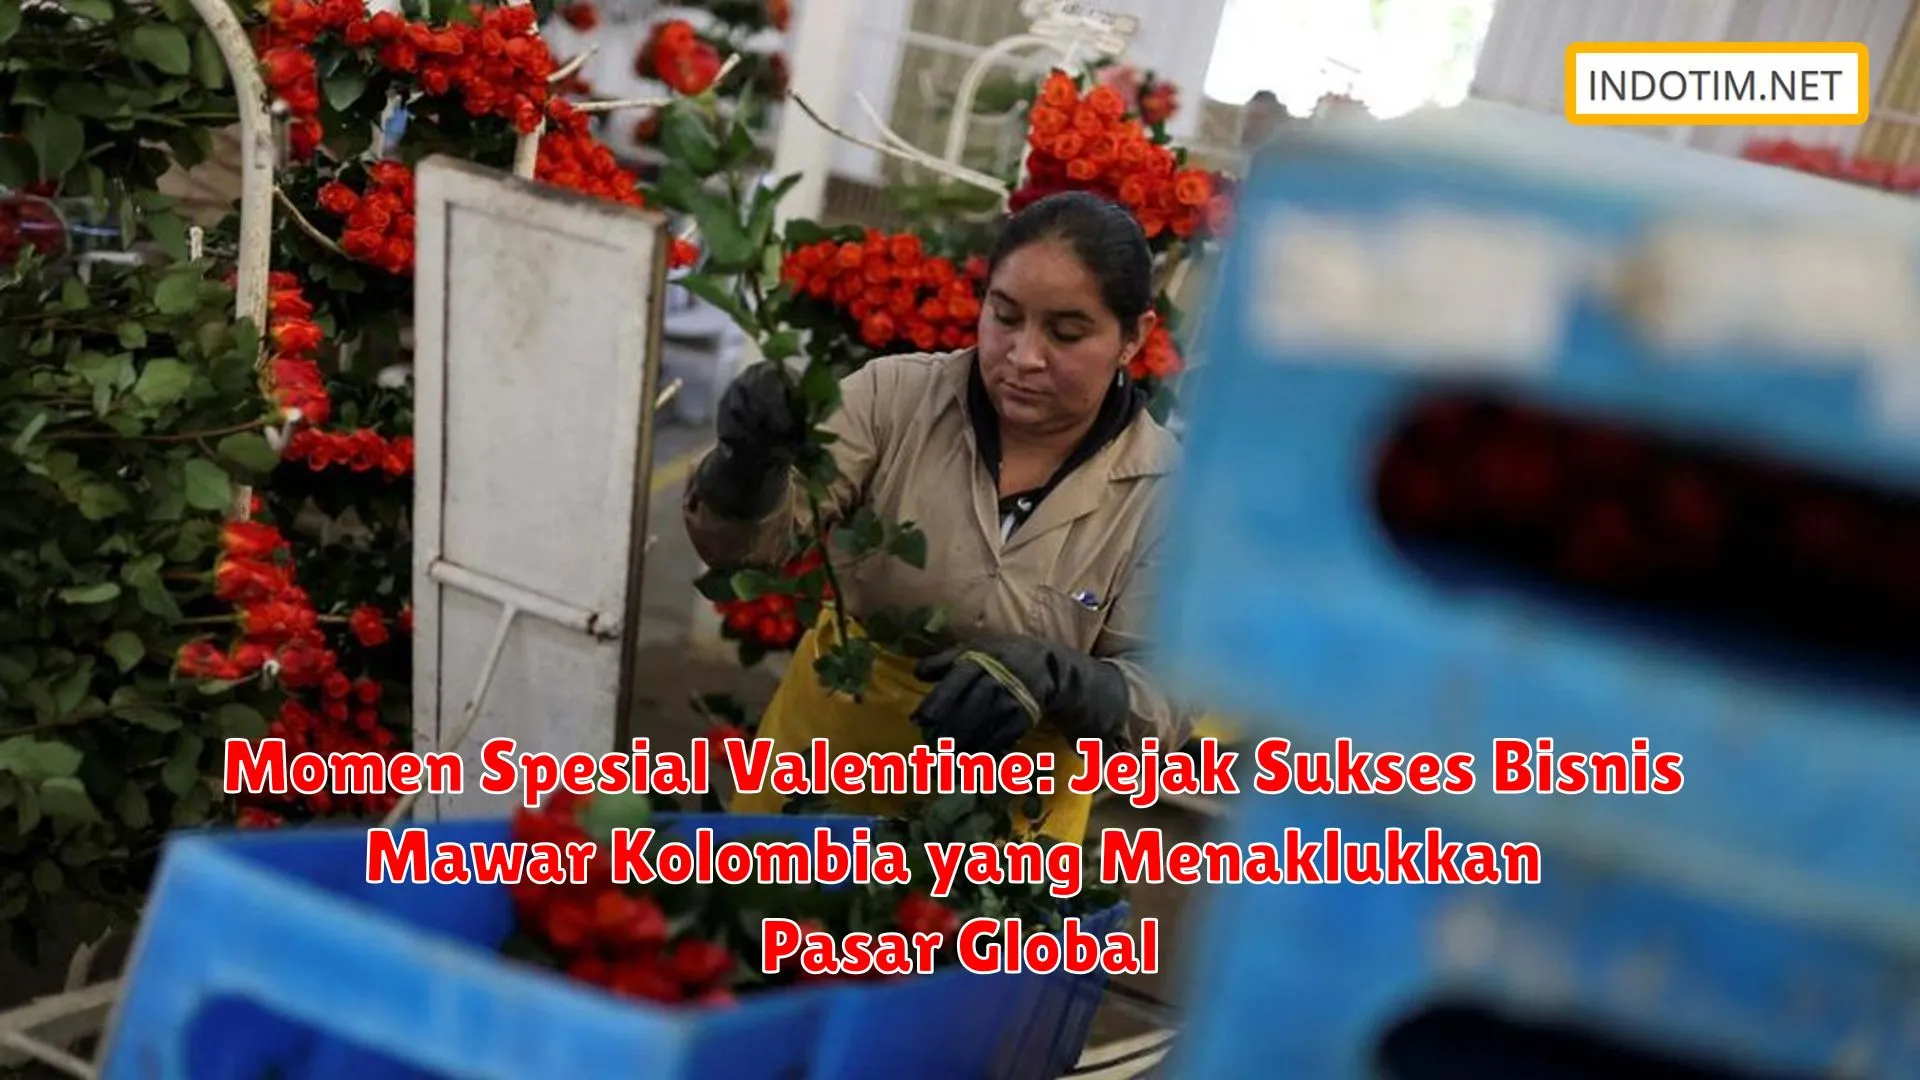 Momen Spesial Valentine: Jejak Sukses Bisnis Mawar Kolombia yang Menaklukkan Pasar Global